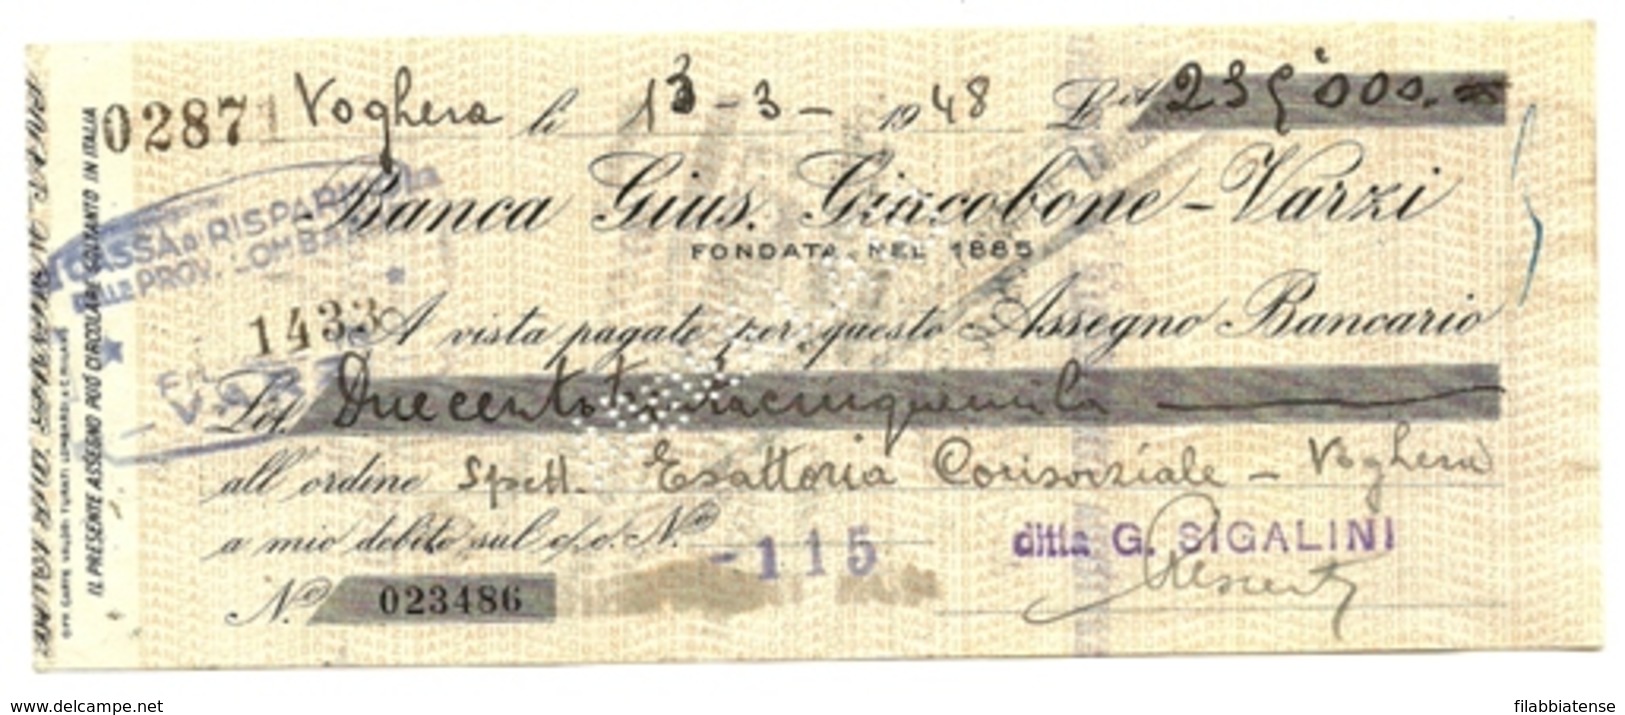 1948 - Italia - Assegno Della Banca Gius. Giucobone, - Cheques & Traveler's Cheques